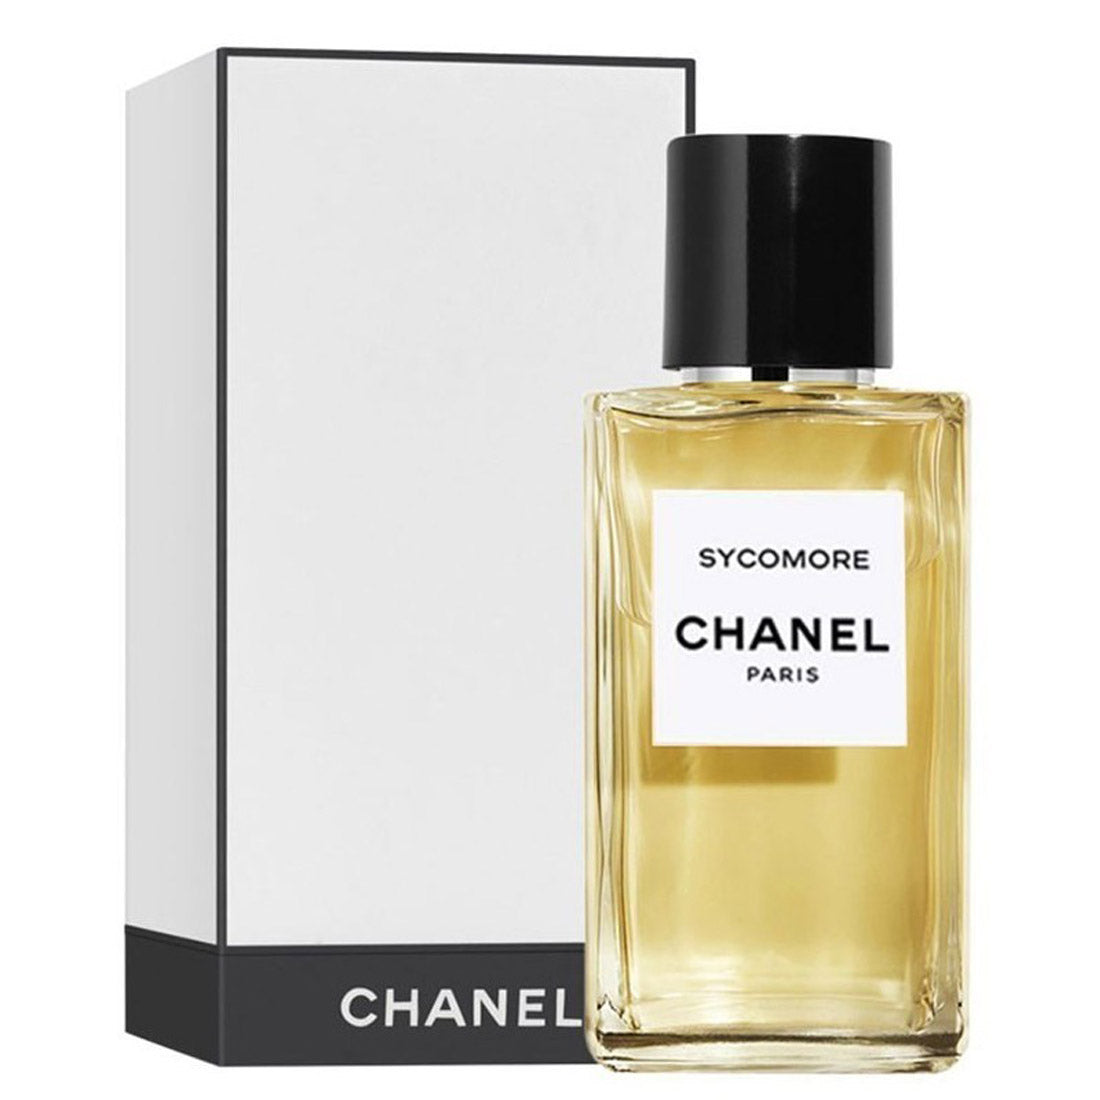 Chanel Sycomore Les Exclusifs De Chanel Eau de Parfum